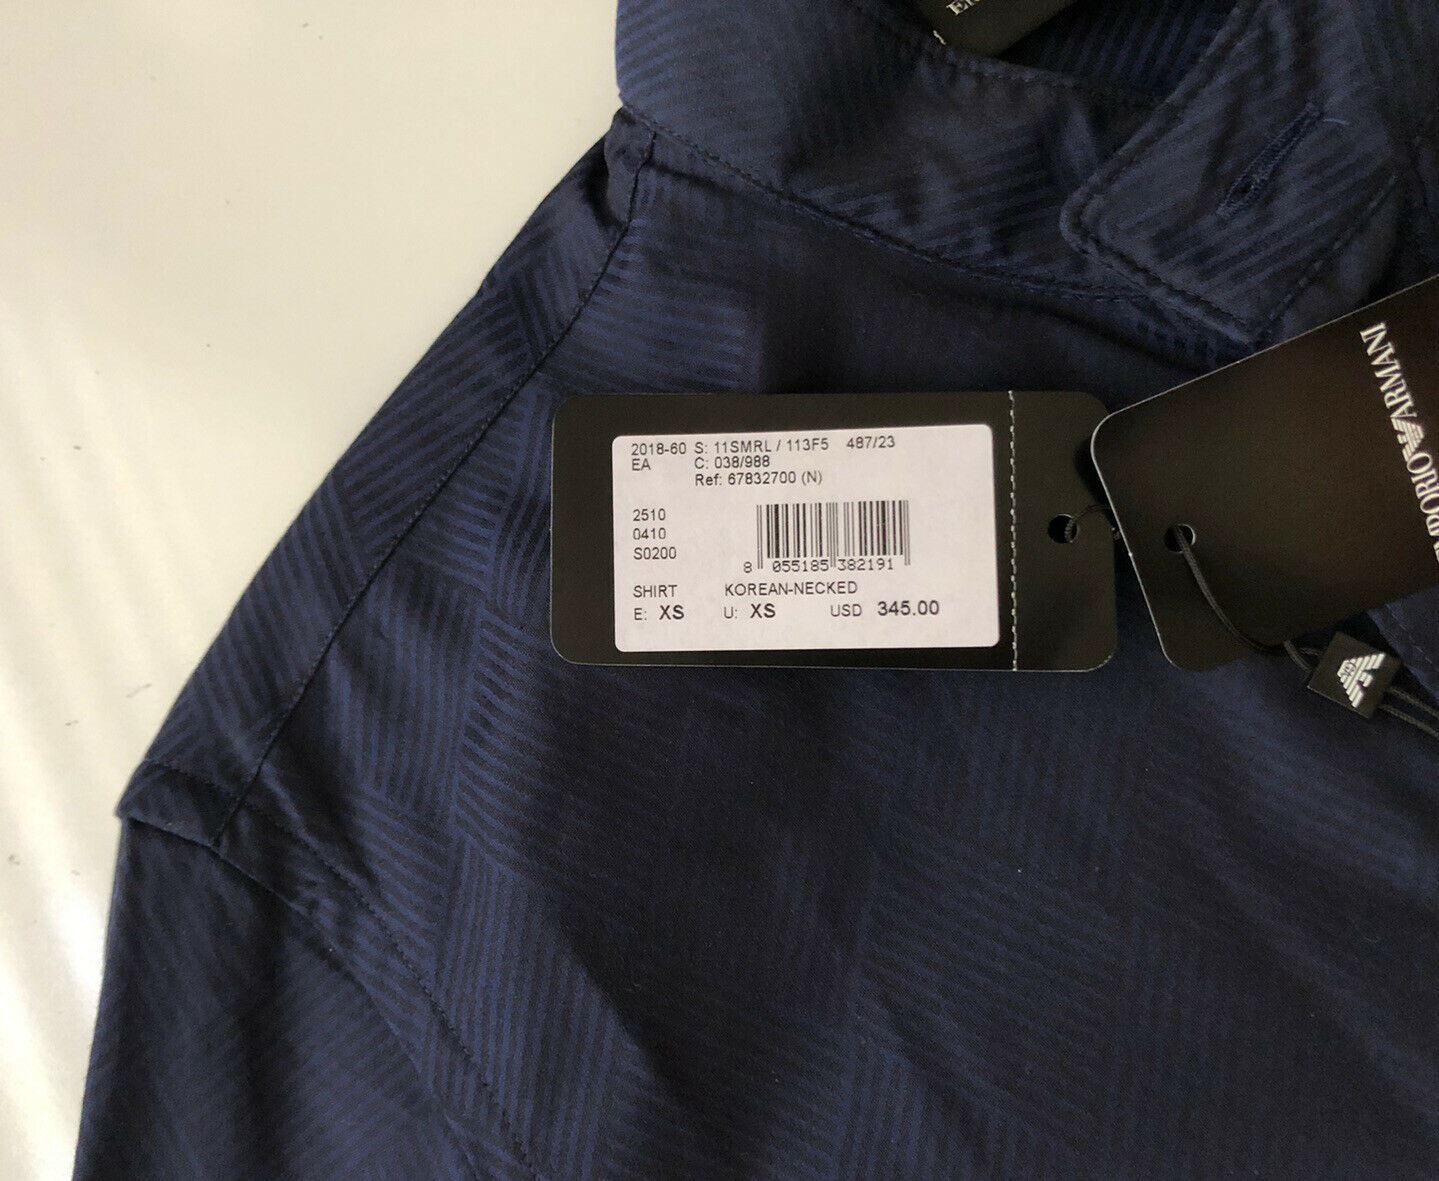 NWT $345 Emporio Armani Korean-Necked Blue Dress Shirt Size XS 11SMRL